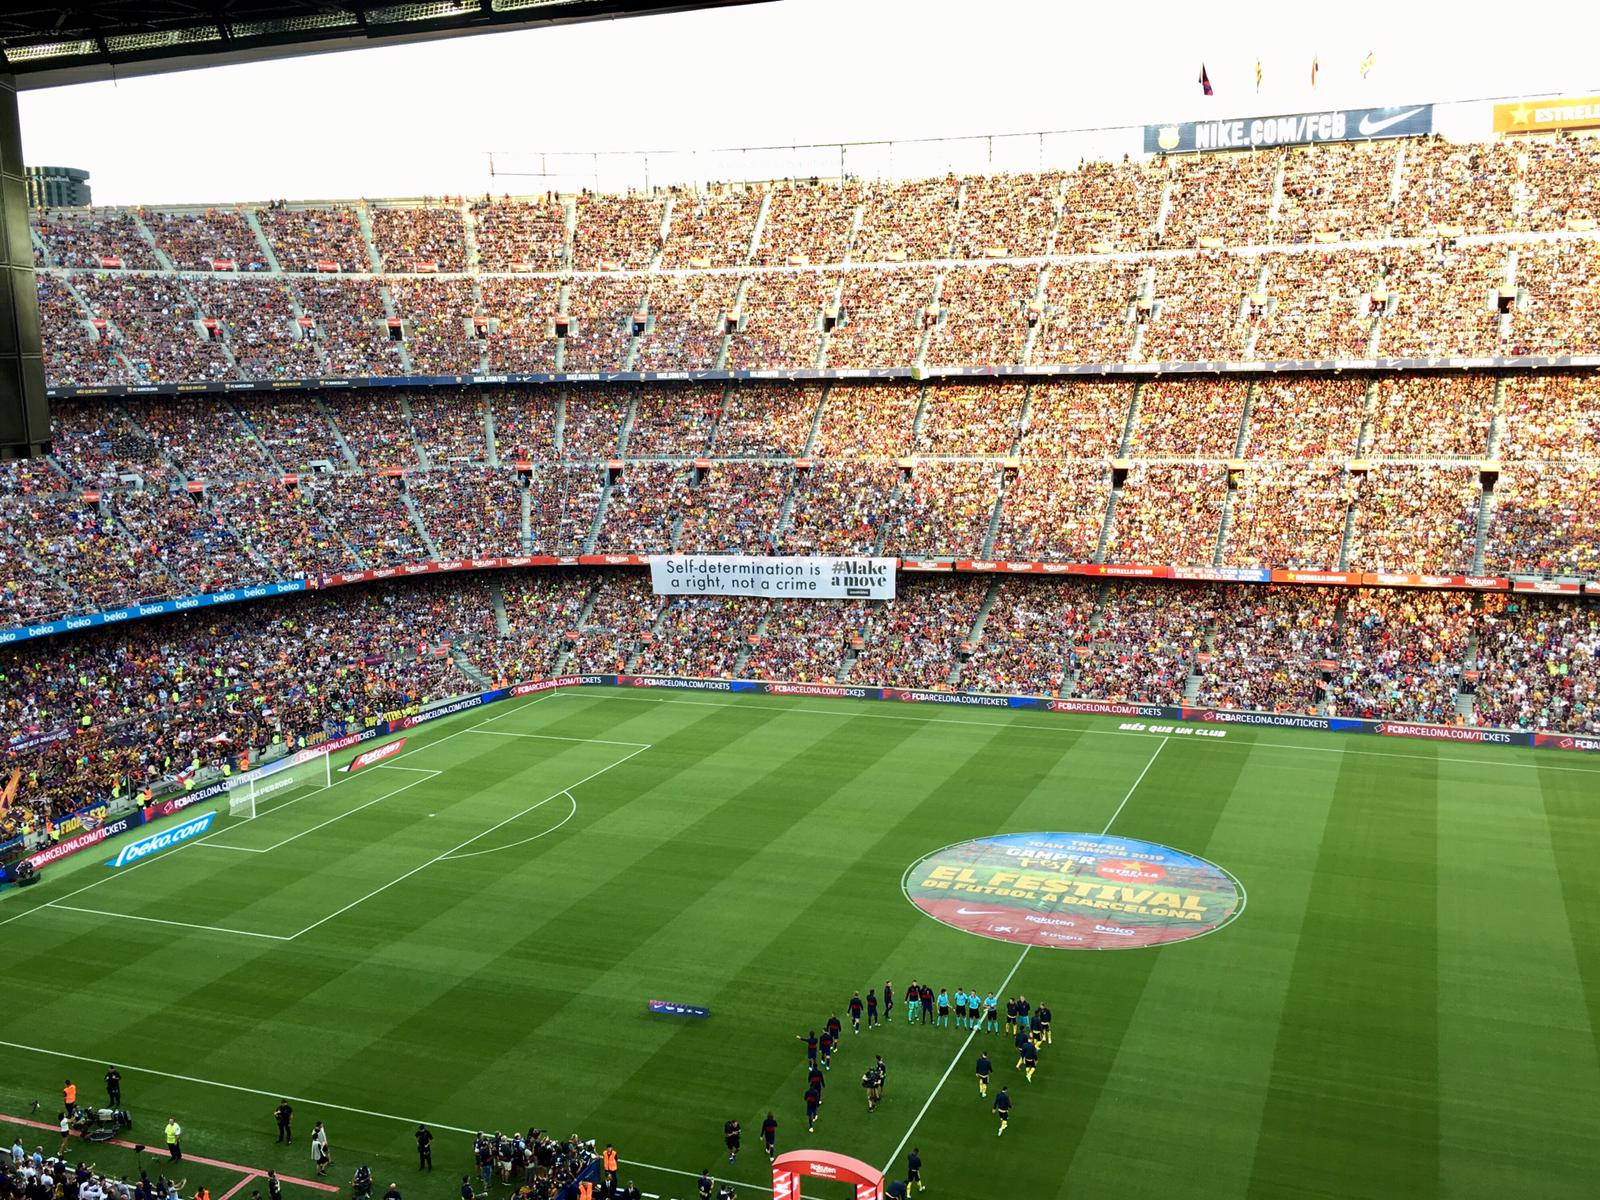 L'autodeterminació de Catalunya, protagonista en l'estrena del Barça al Camp Nou